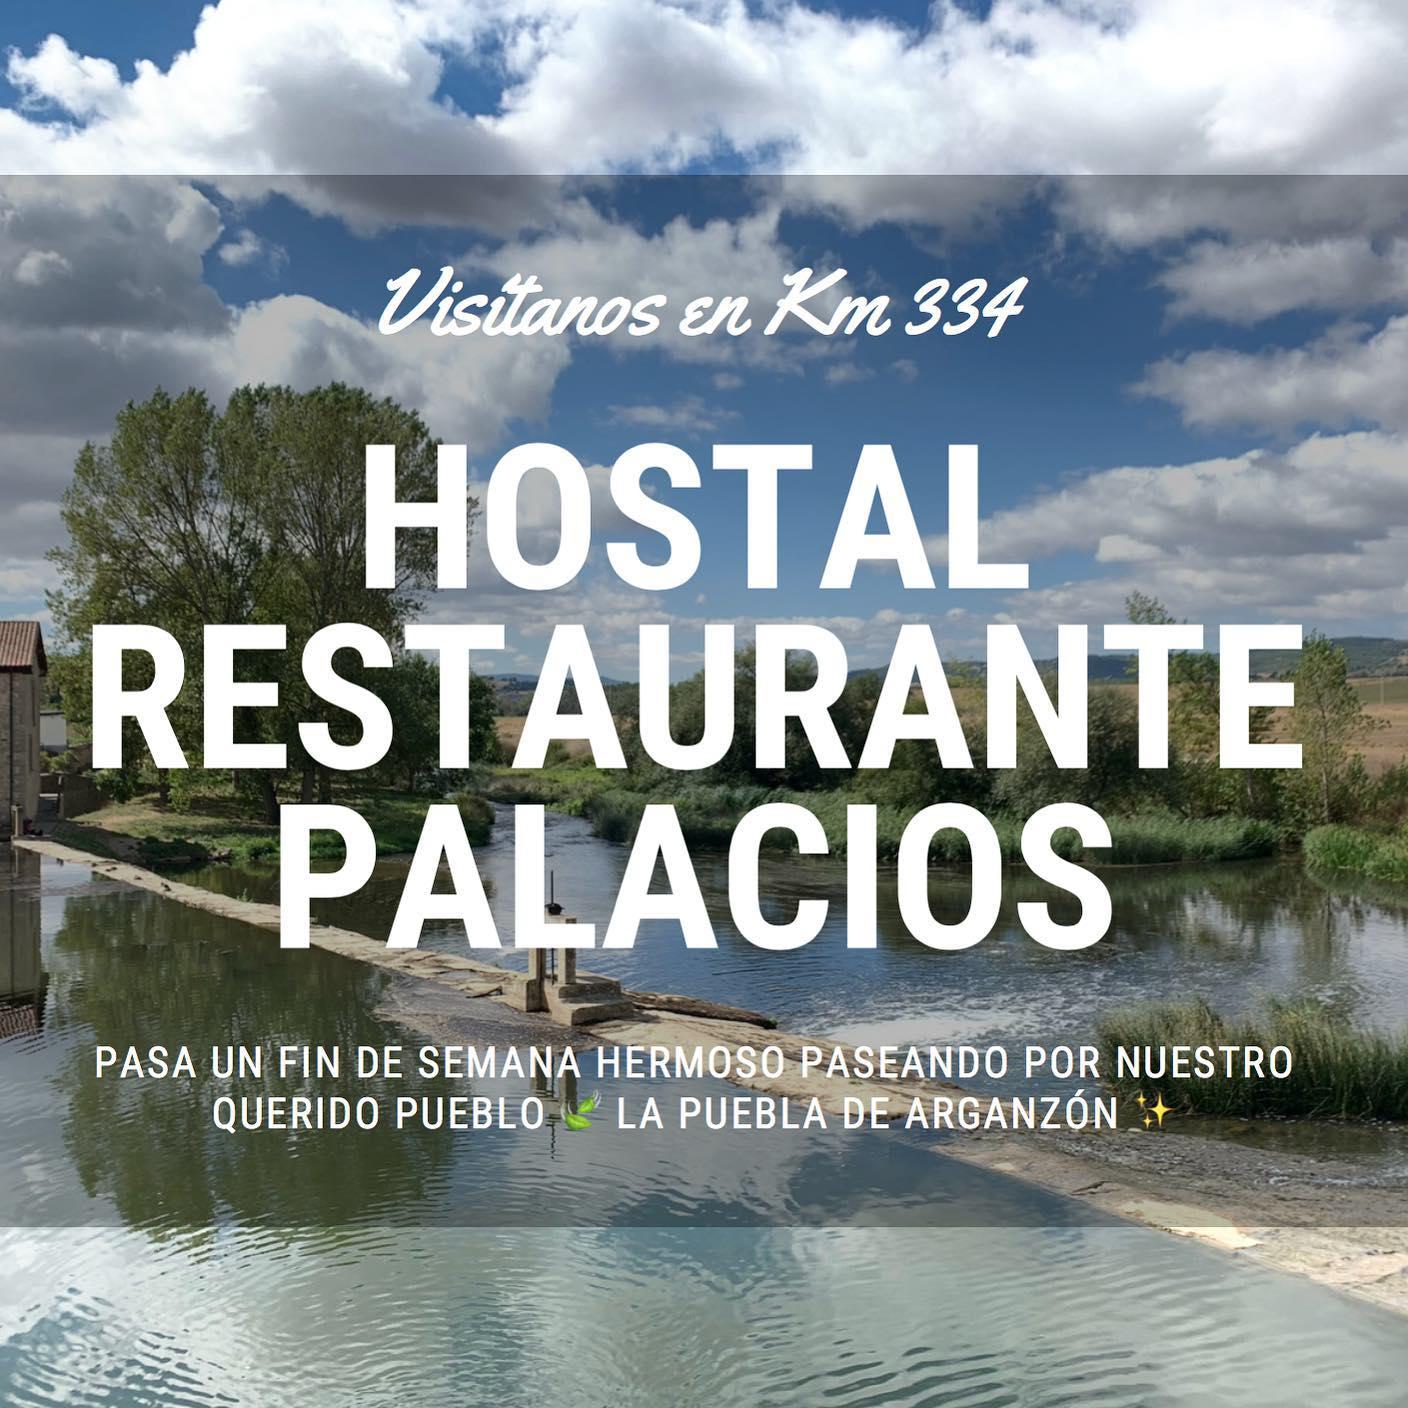 Images Hostal Restaurante Palacios